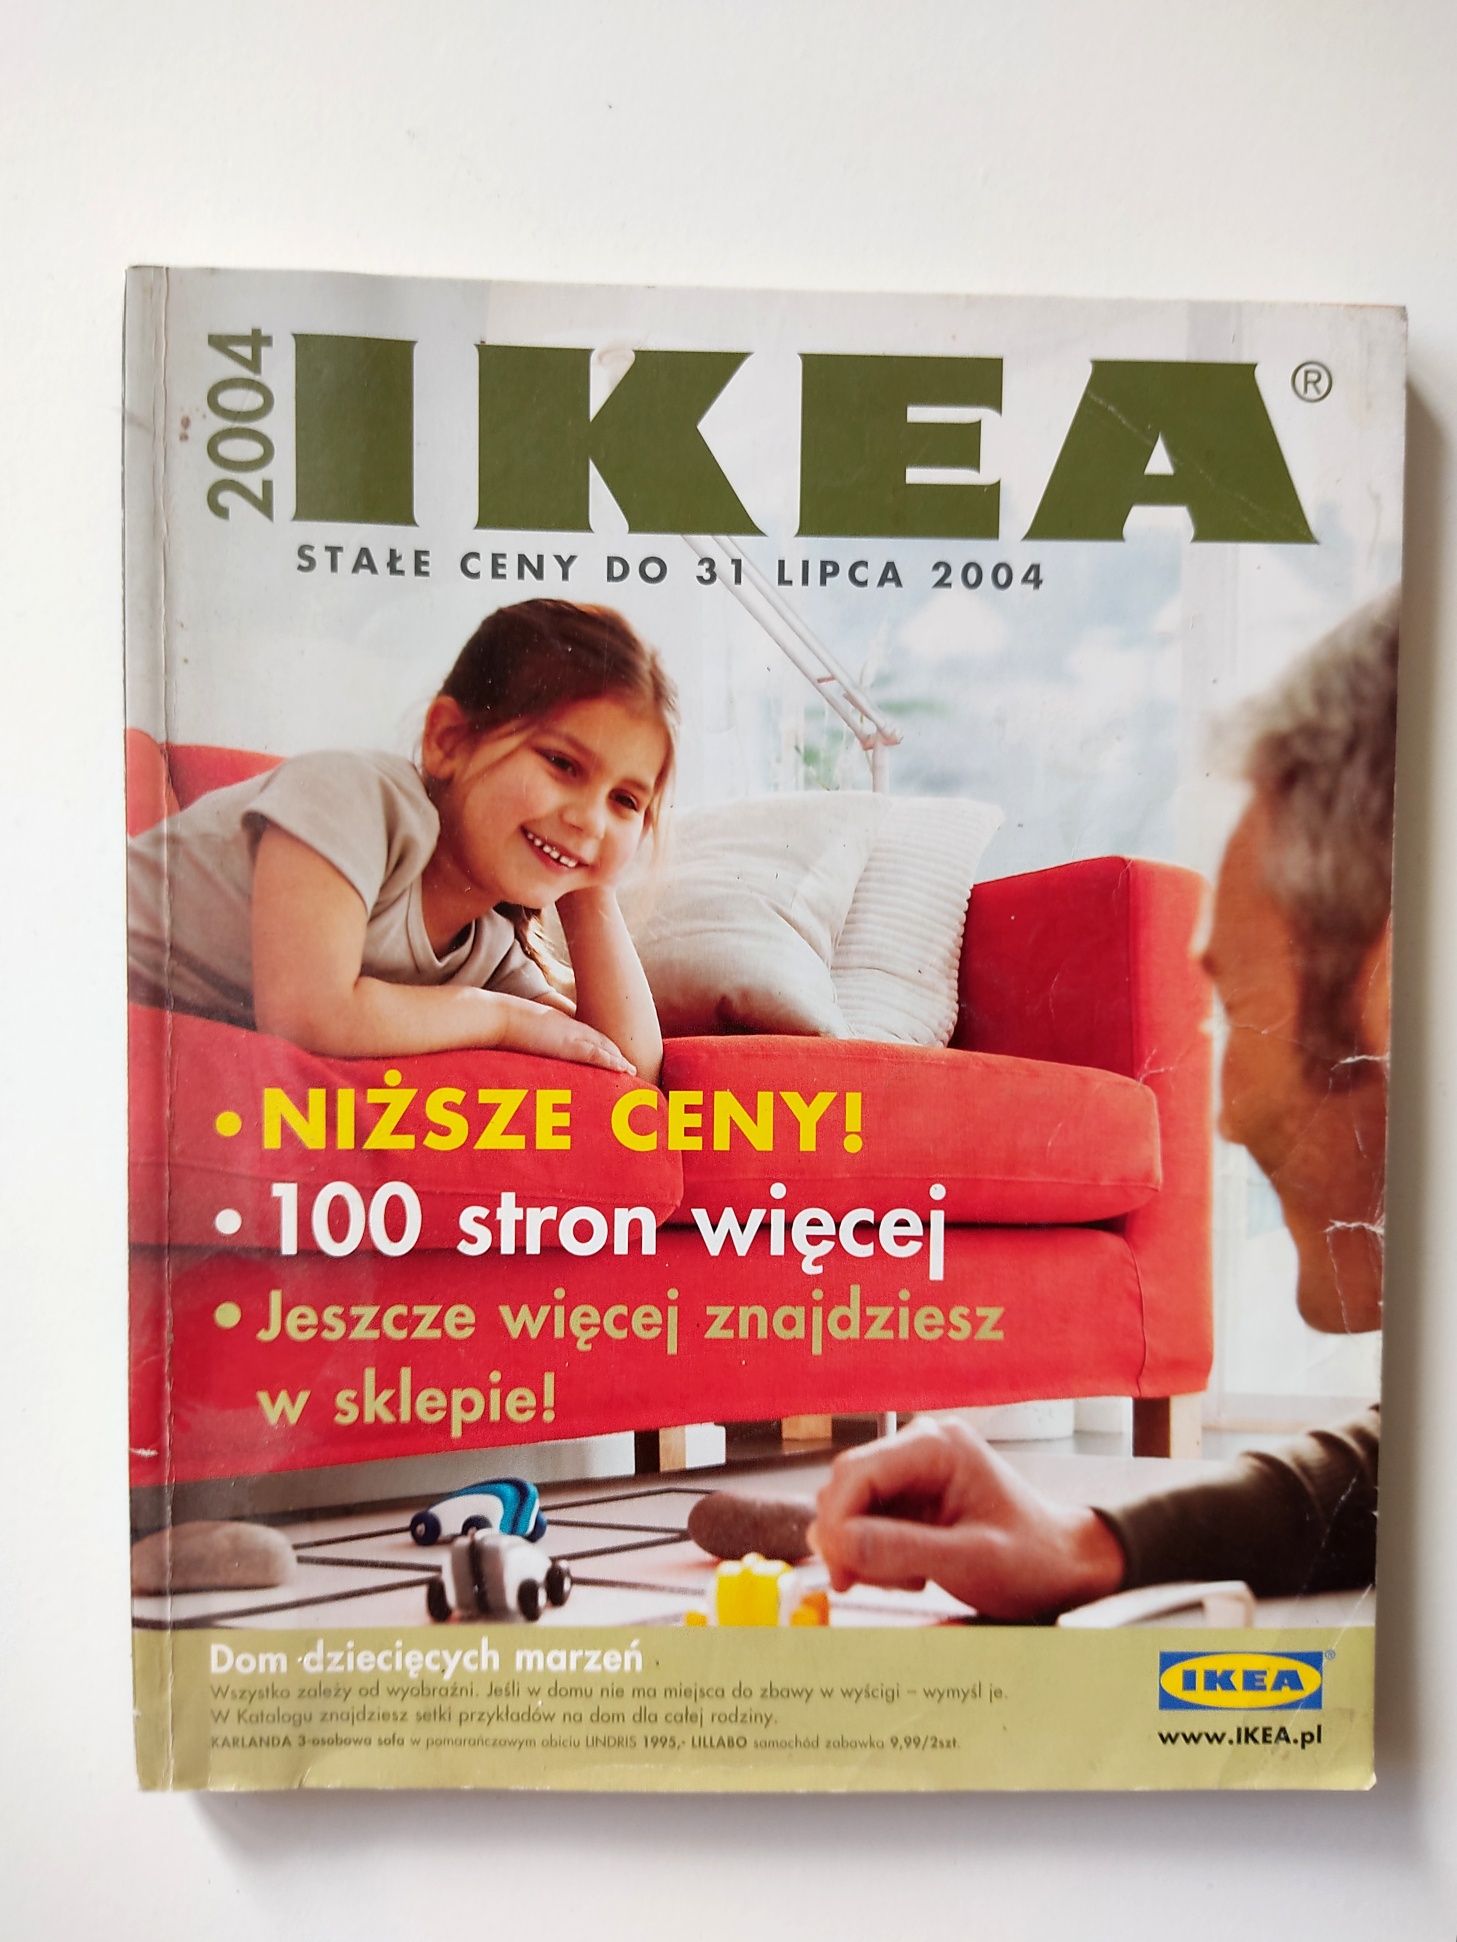 22 szt katalog IKEA kolekcjoner 1984 / 1985 +1999, 1998, 1997, 2003rok